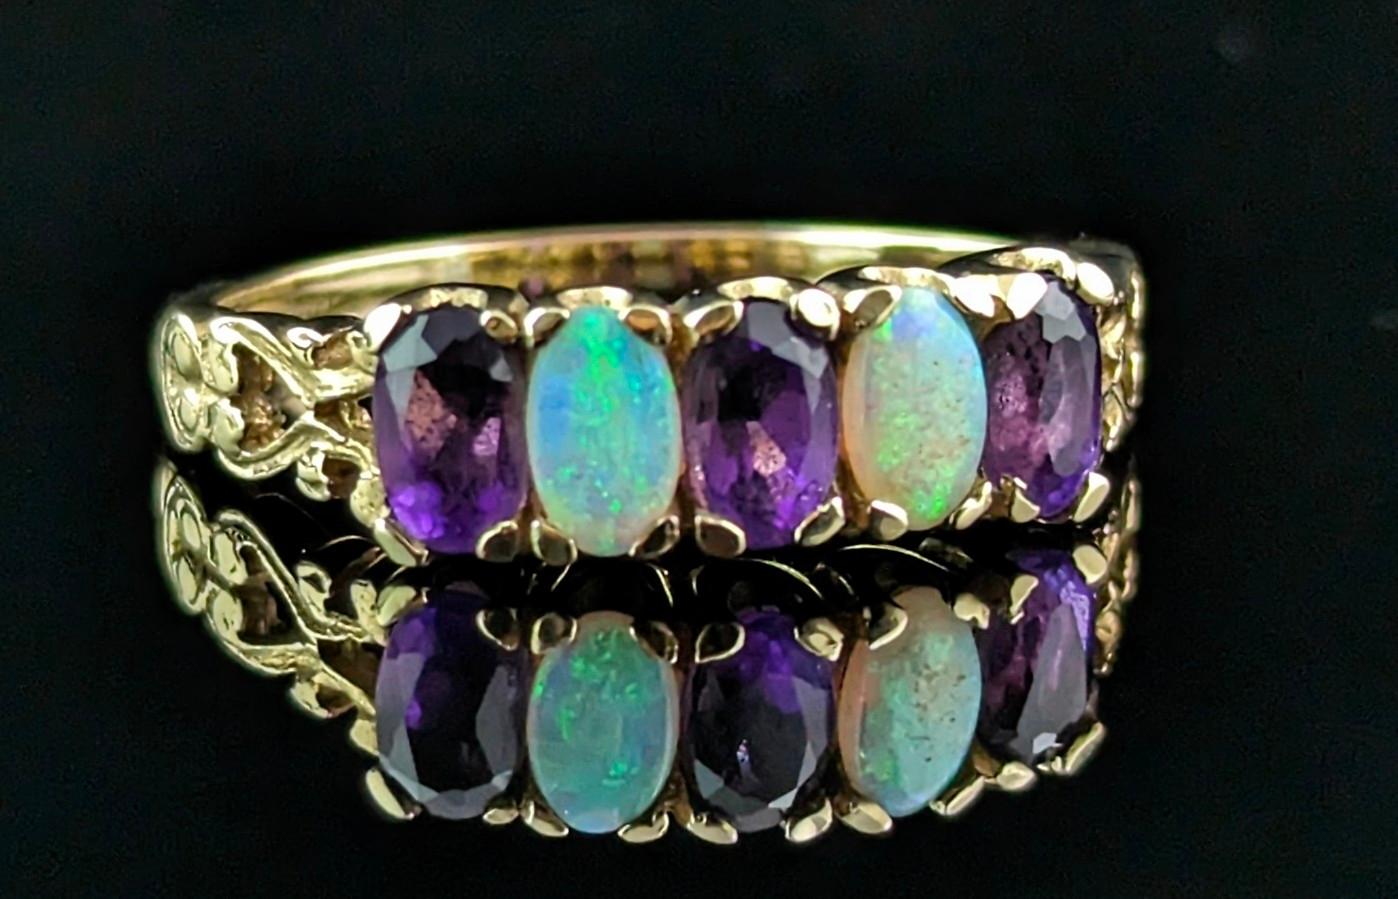 Ein wunderschöner und lebendiger Vintage-Ring mit fünf Opal- und Amethyststeinen.

Es ist ein halber Ring aus reichem 9-karätigem Gelbgold mit dekorativen Schultern in Herzform und einem schmalen Band.

Die Vorderseite des Rings ist abwechselnd mit